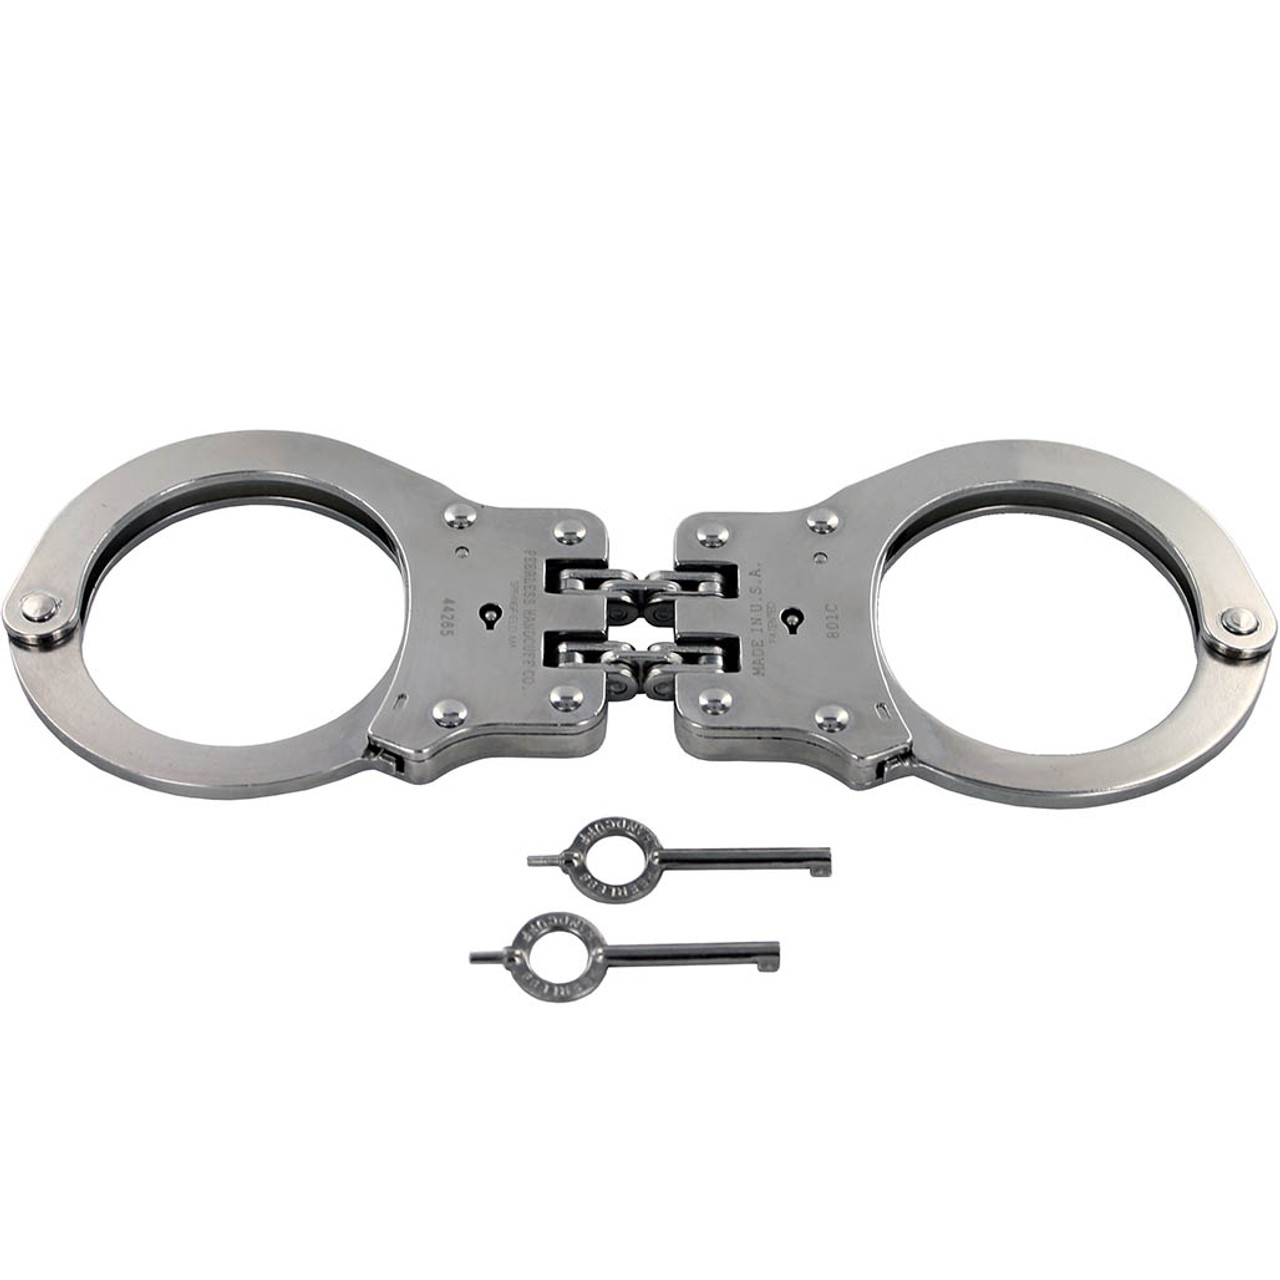 Peerless Model 801c Hinged Nickel Handcuffs